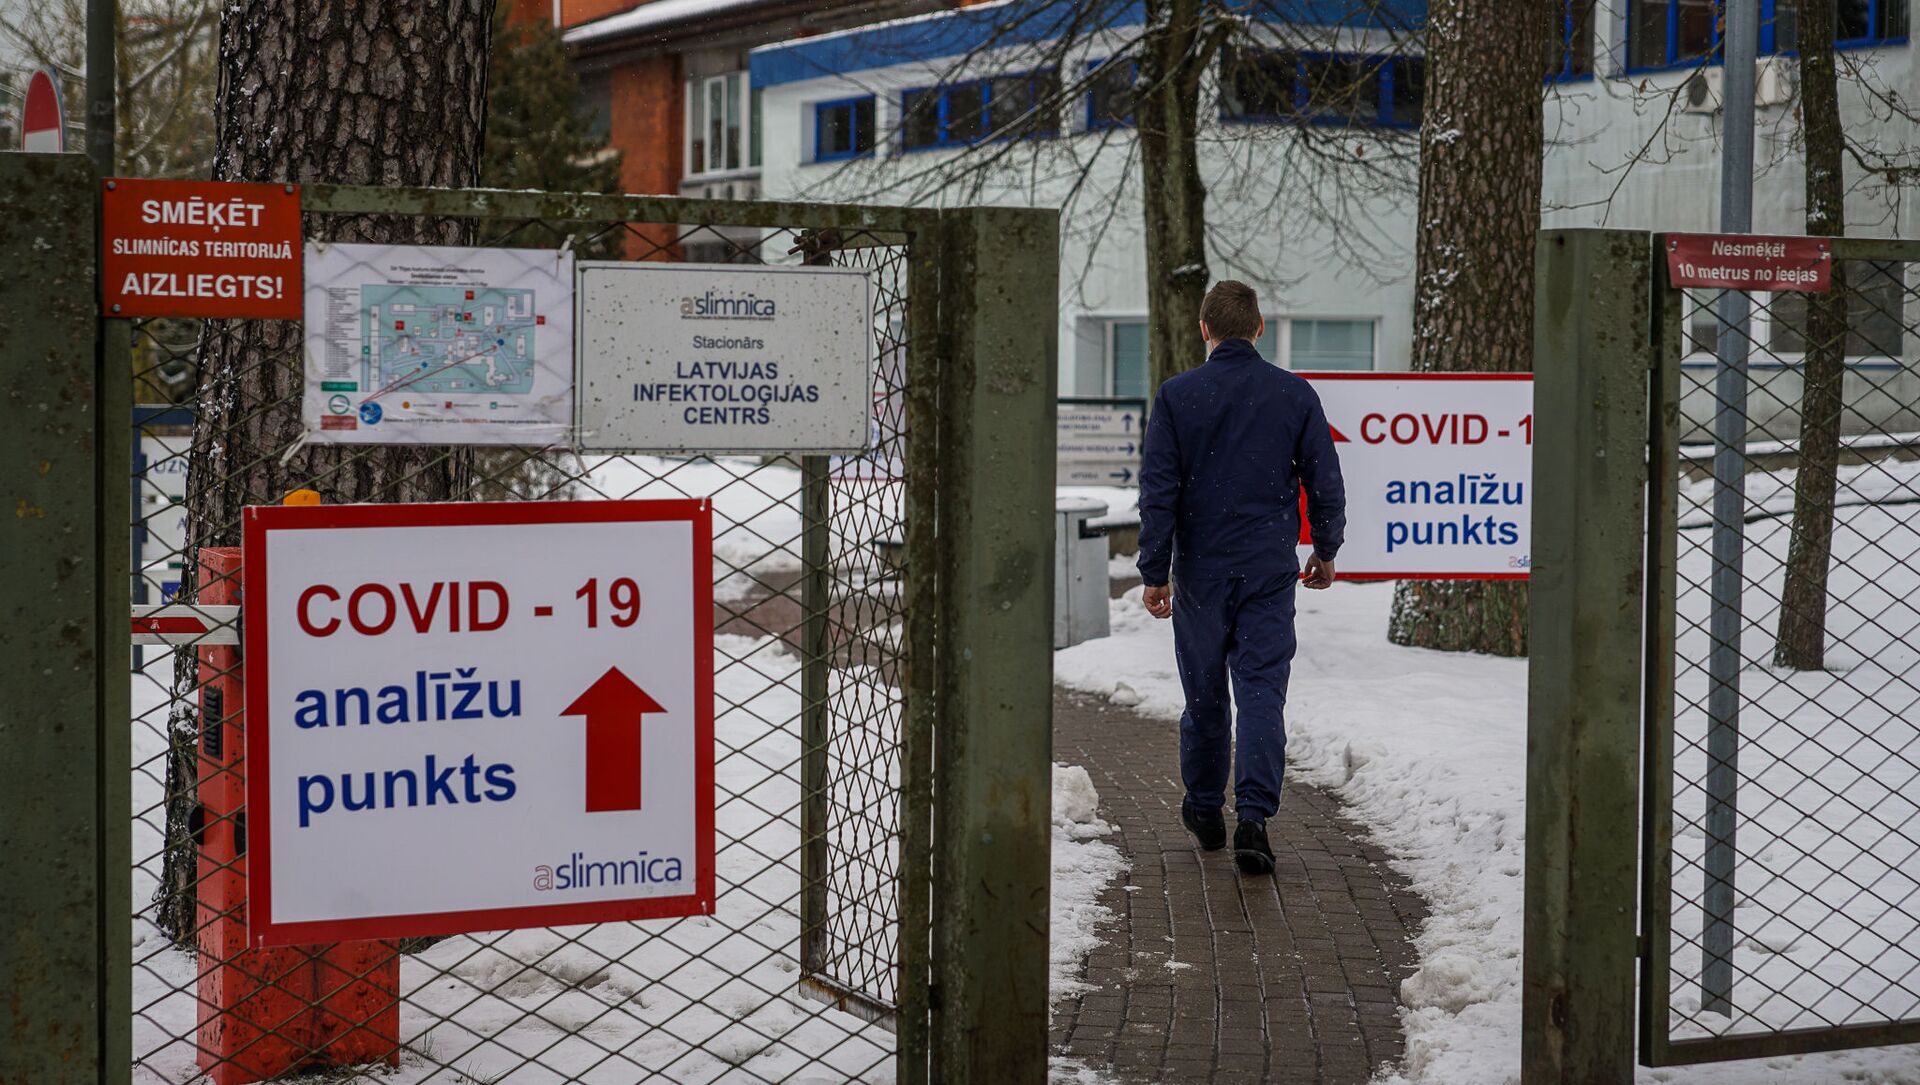 Мужчина направляется в пункт приема тестов на COVID-19 в Латвийском центре инфектологии - Sputnik Латвия, 1920, 04.02.2021